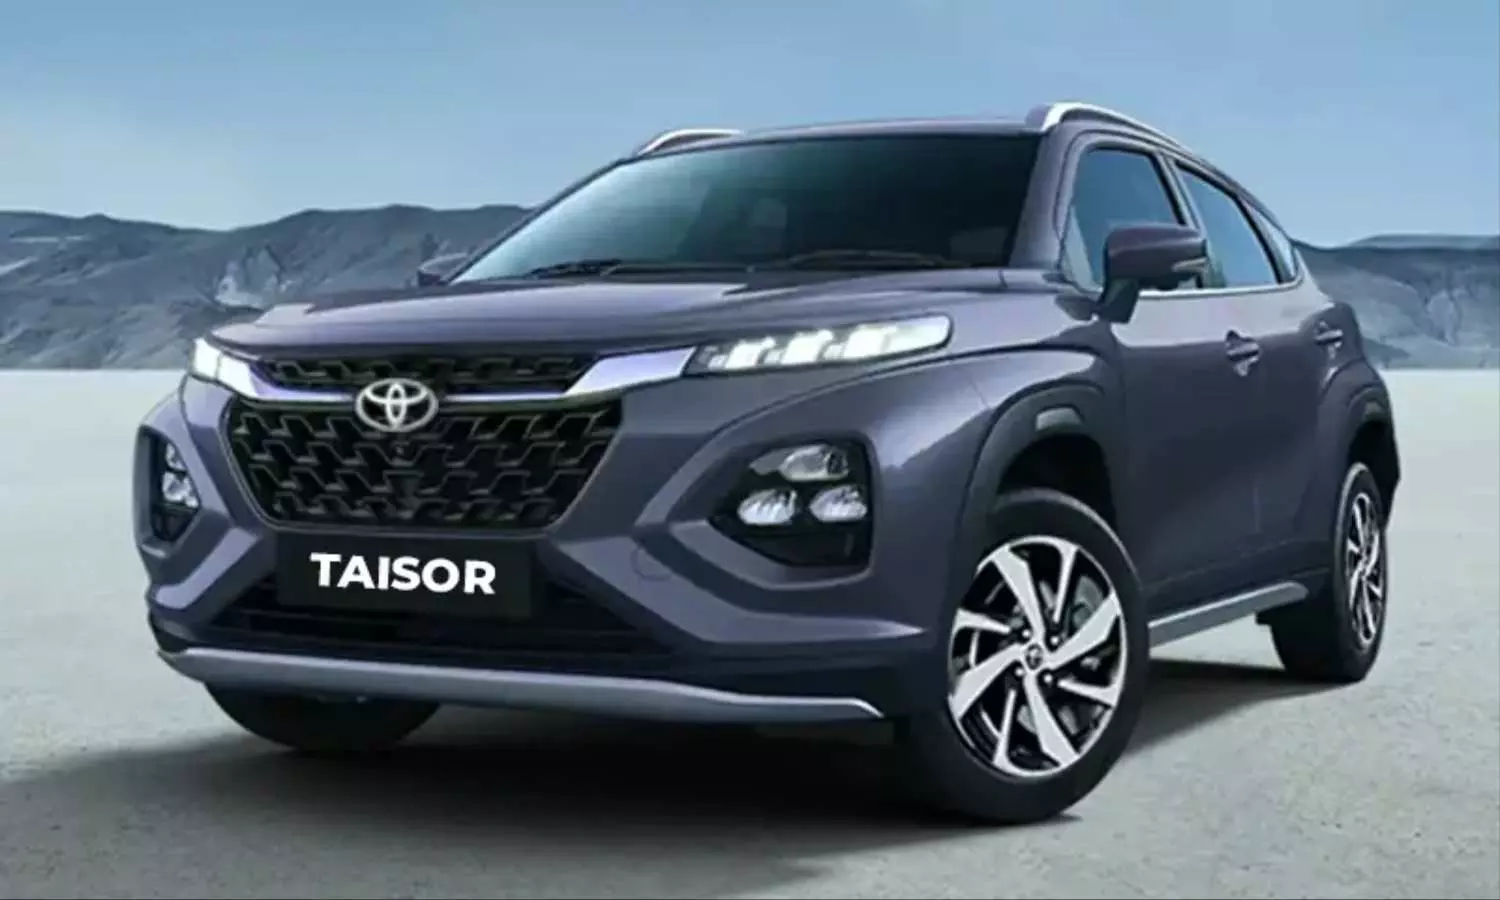 Toyota Taisor SUV Price: इस दिन लॉन्च होने जा रही है टोयोटा की शानदार एसयूवी, TATA Punch को देगी कड़ी टक्कर